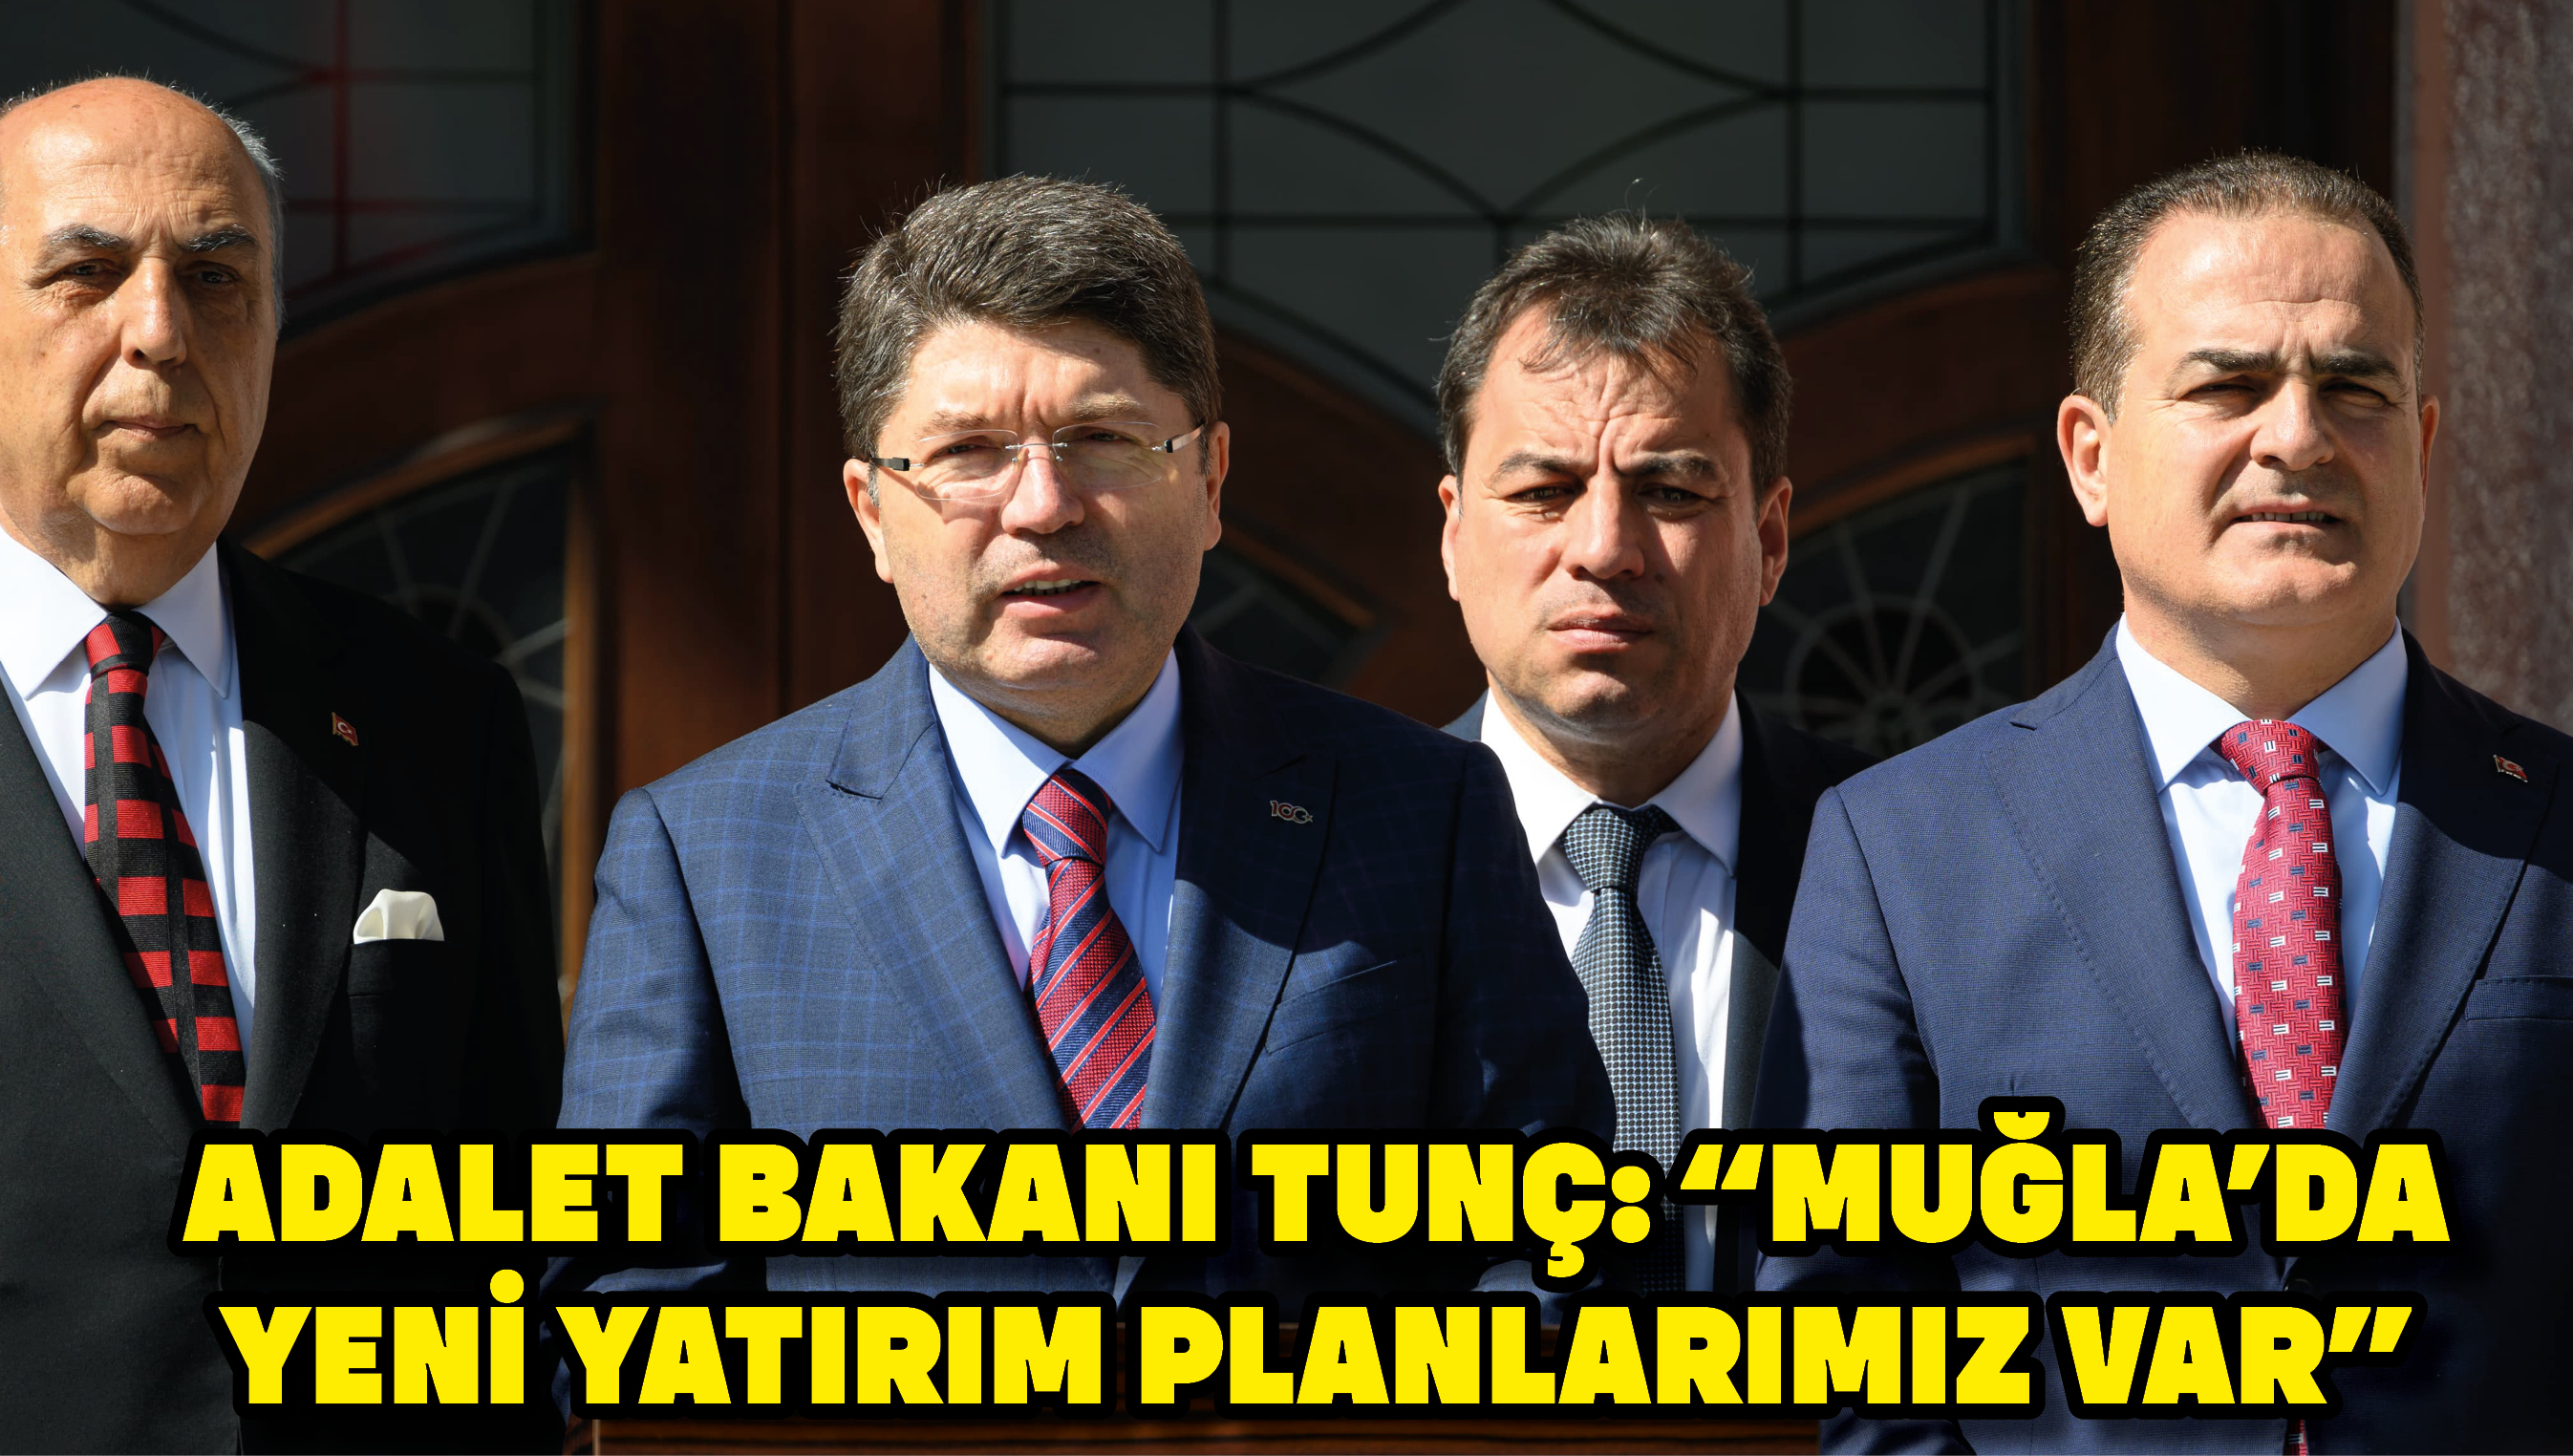 Adalet Bakanı Tunç: “Muğla'da yeni yatırım planlarımız var”